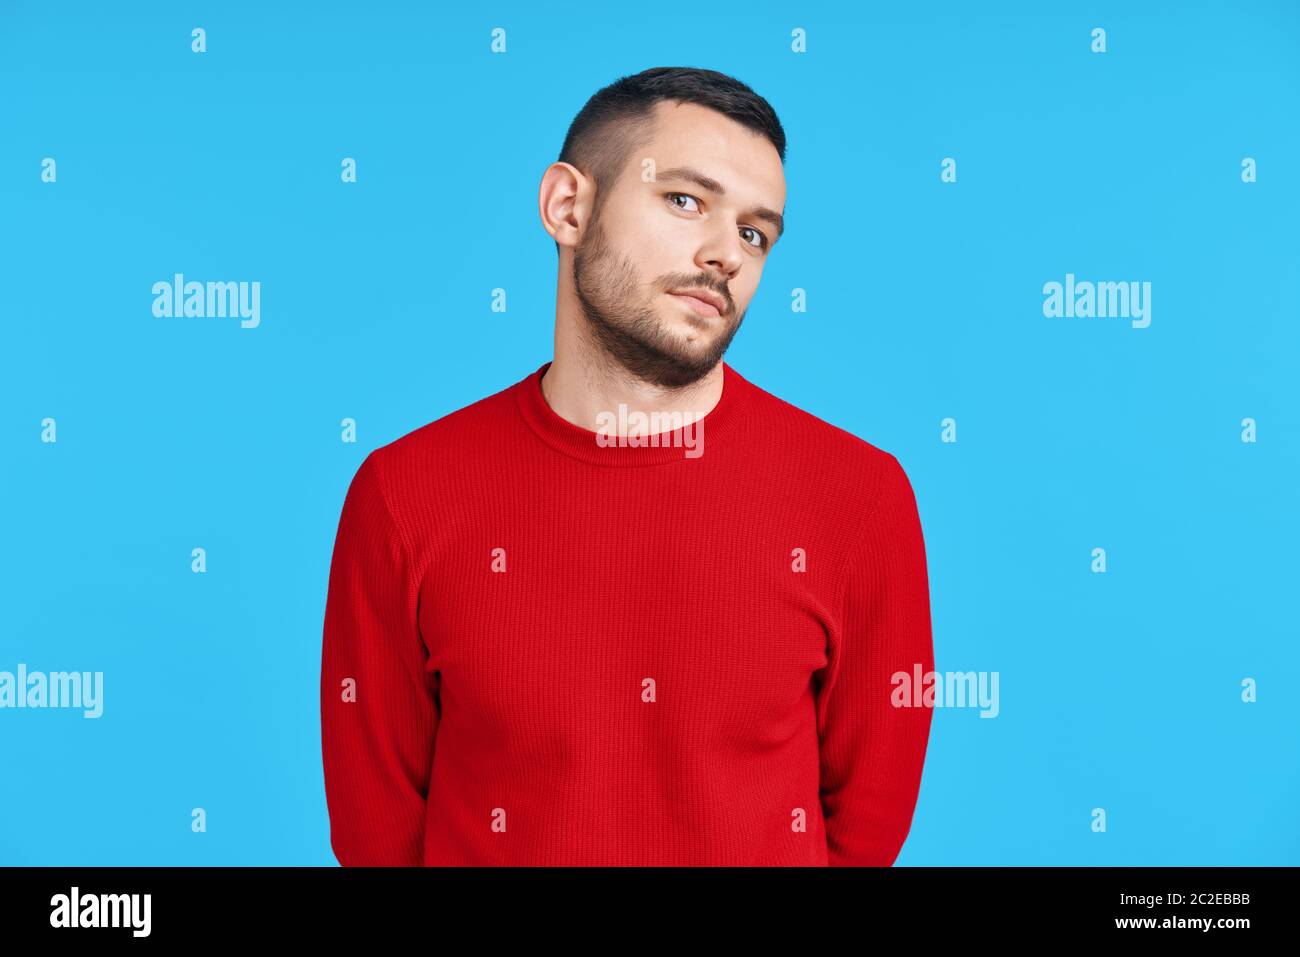 Shy verwirrt Mann Porträt auf blauem Hintergrund Stockfoto